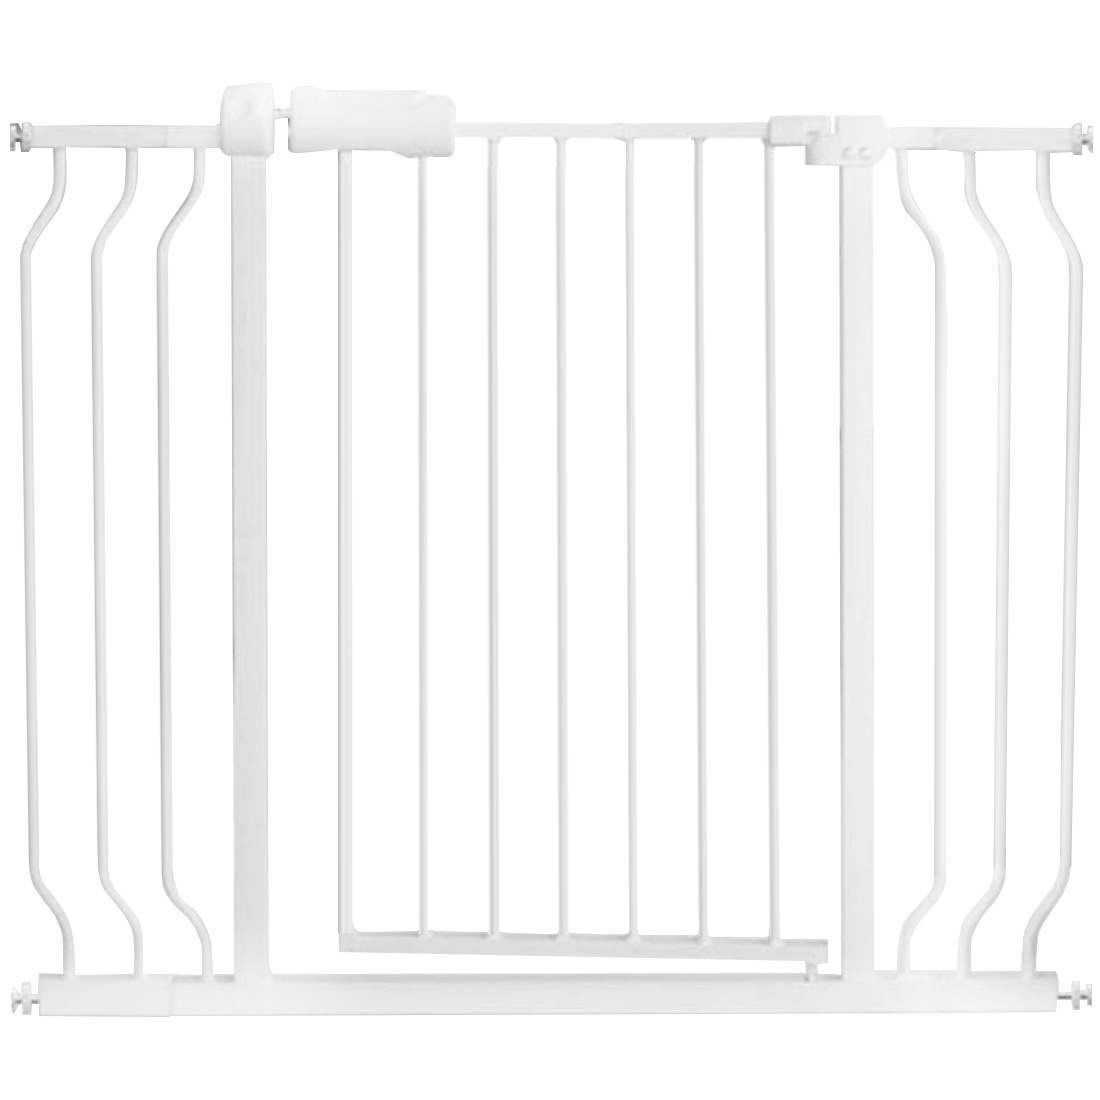 Детские ворота детские забор прикрепленная ширина 98-110 см. Растянутая функция автоматического закрытия